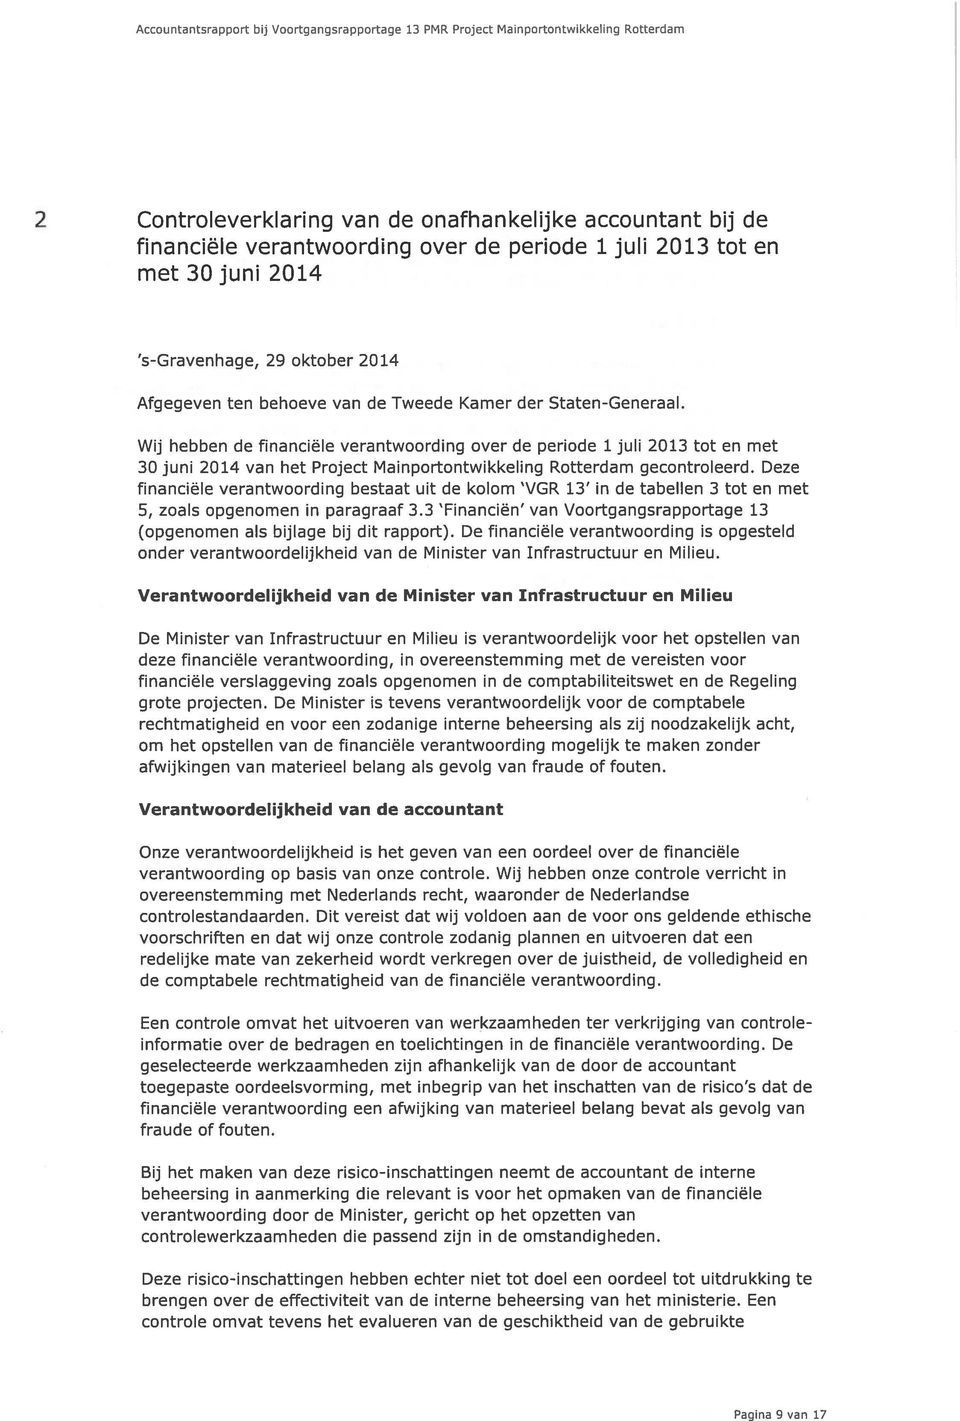 Wij hebben de financiële verantwoording over de periode 1juli 2013 tot en met 30 juni 2014 van het Project Mainportontwikkeling Rotterdam gecontroleerd.